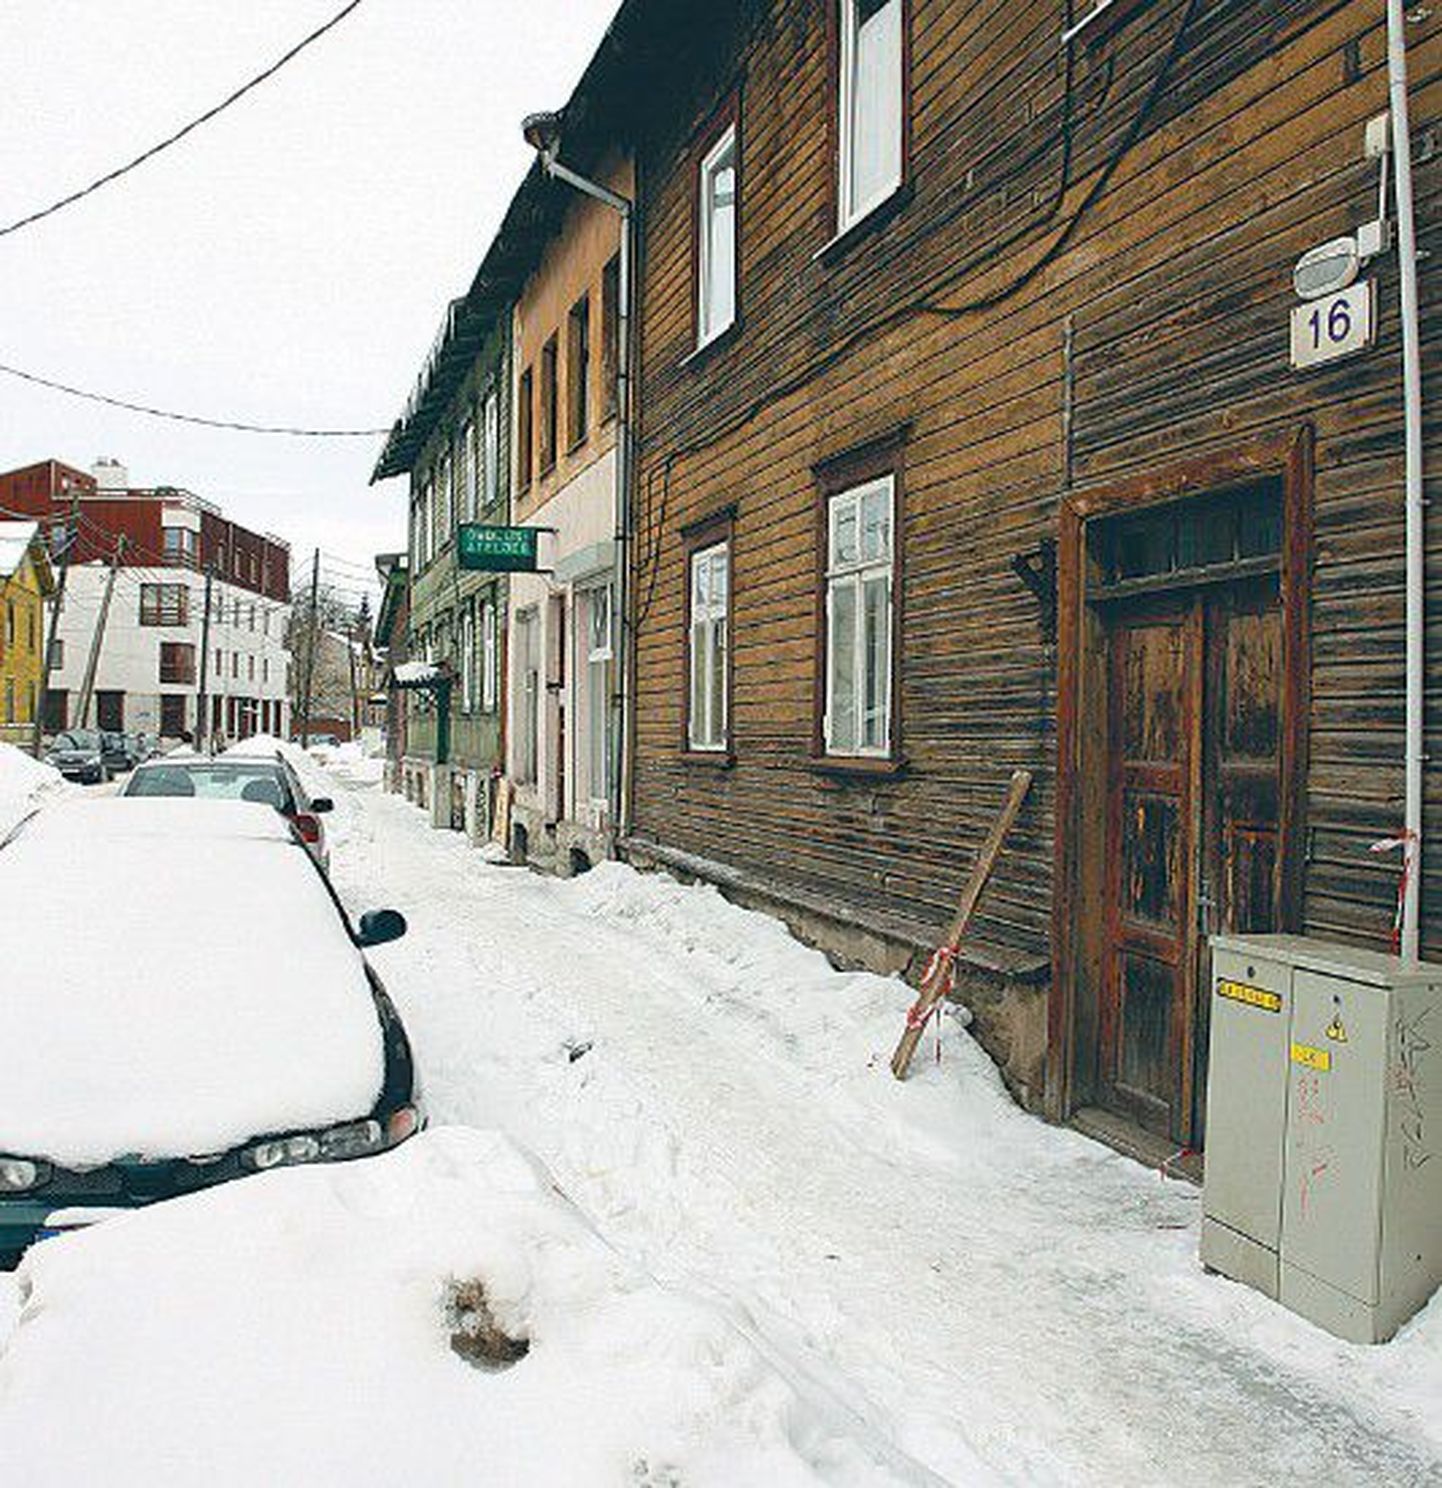 Именно здесь, на улице Ыле в Таллинне, неизвестный мужчина с монтировкой в руках напал в начале марта на двух девушек, которым удалось убежать от преступника.